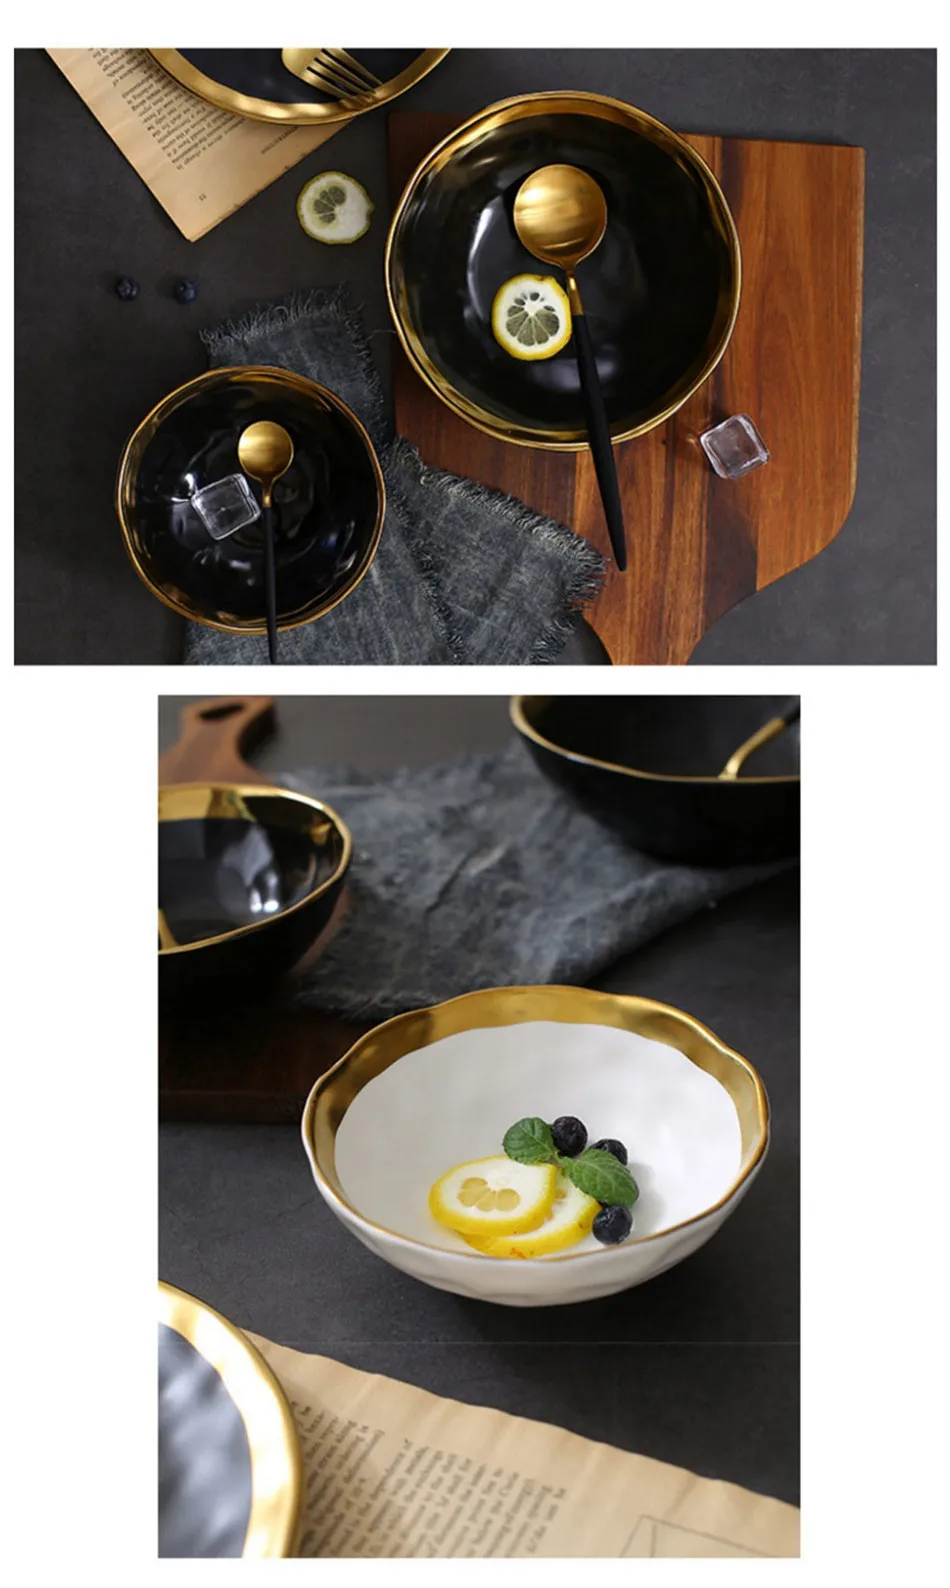 Уникальный Ретро Пномпень керамическая чаша салат десерт миска для рисового супа фрукты салат тарелка закуска к чаю практичный кухонный инструмент 1 шт